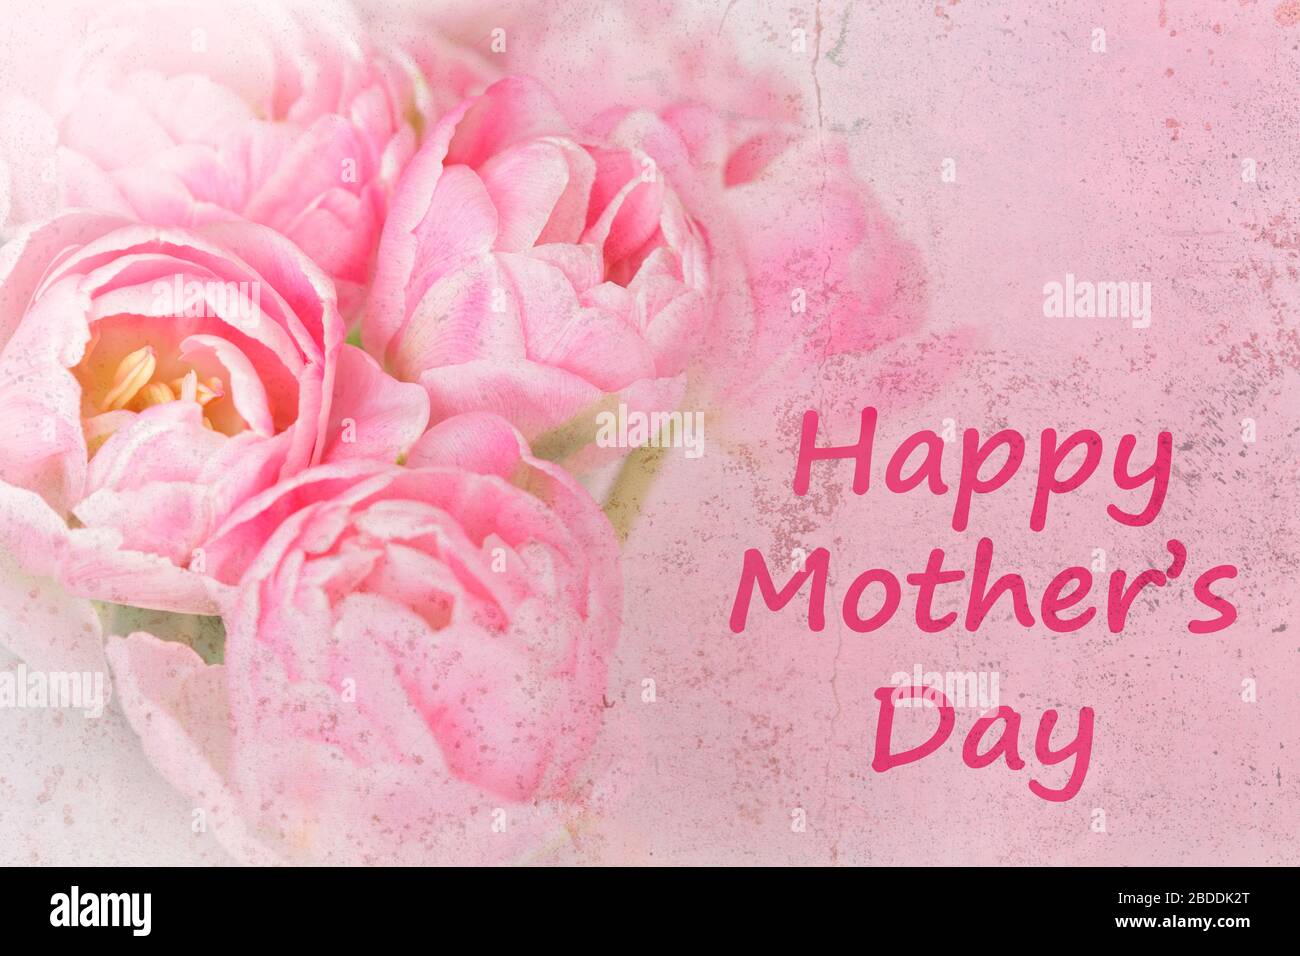 Vorlage für nostalgische Grußkarten. Rosa Blumen mit Text: Glücklicher Muttertag, verängstigter Grunge-Effekt. Stockfoto